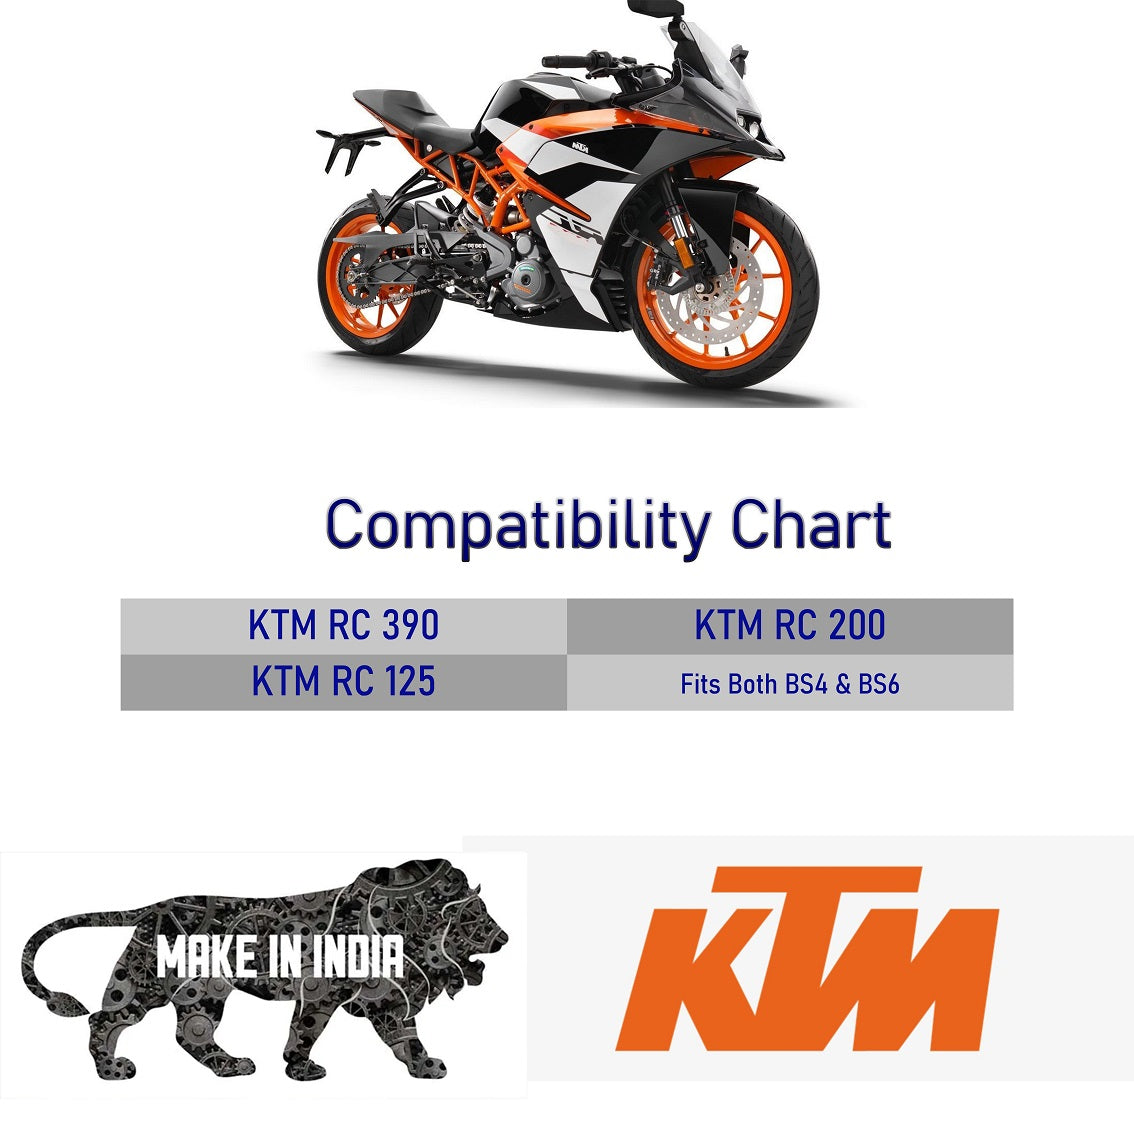 KTM RC Accessories | Modified KTM RC | Best KTM RC Modification | Seat Cowl for KTM RC | Saiga Parts for KTM RC